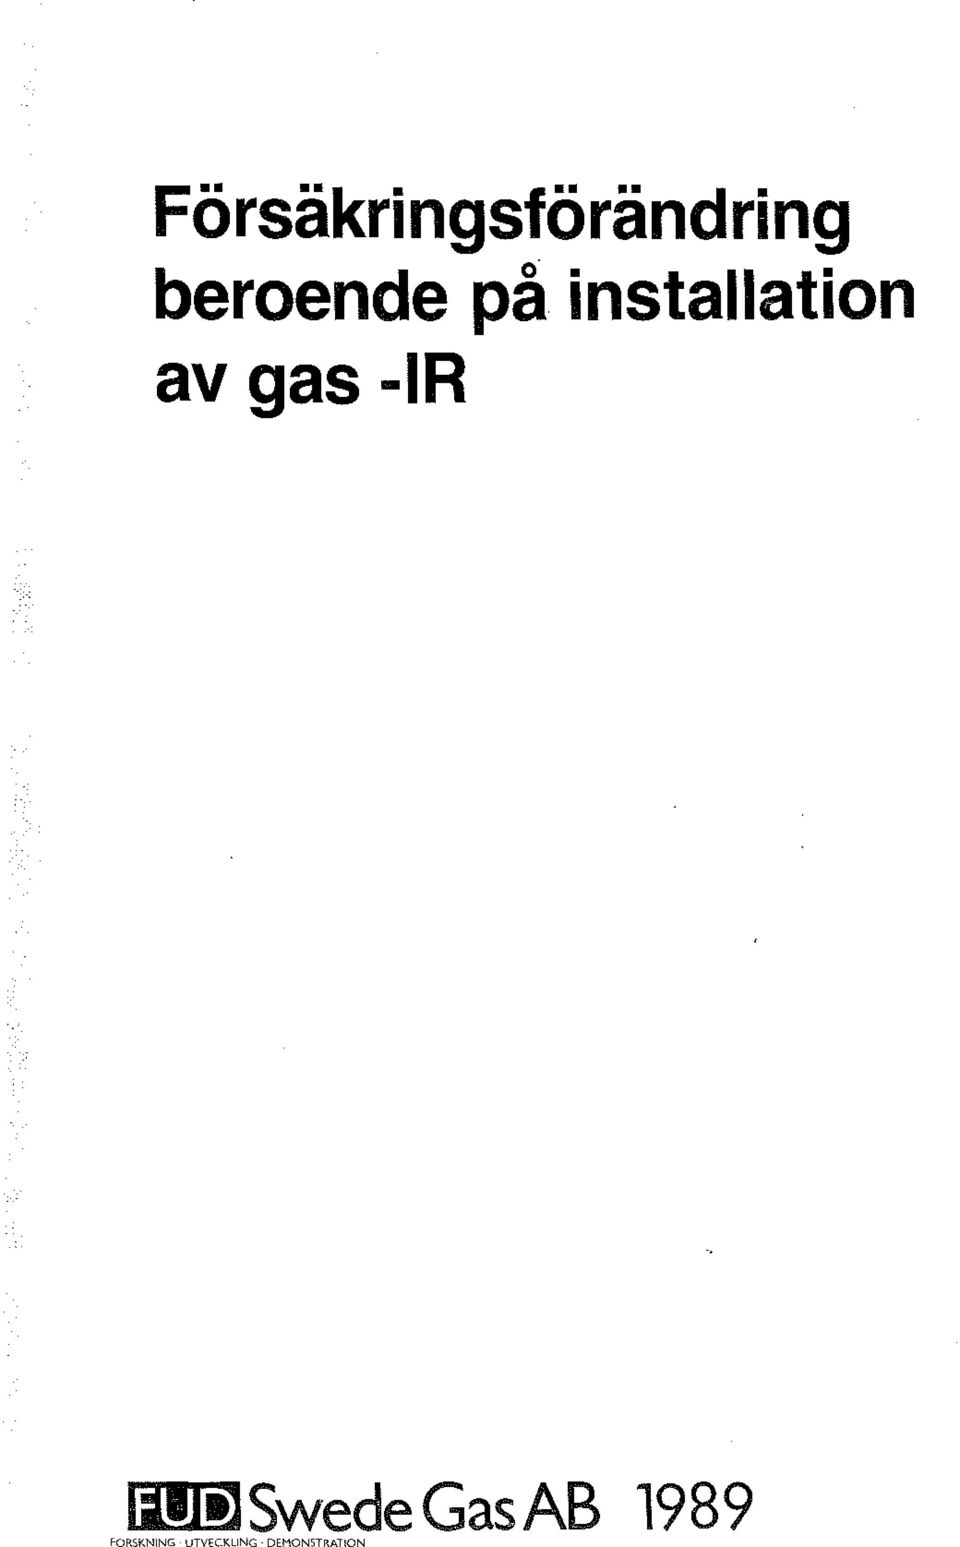 gas -IR lill )Swede Gas AB